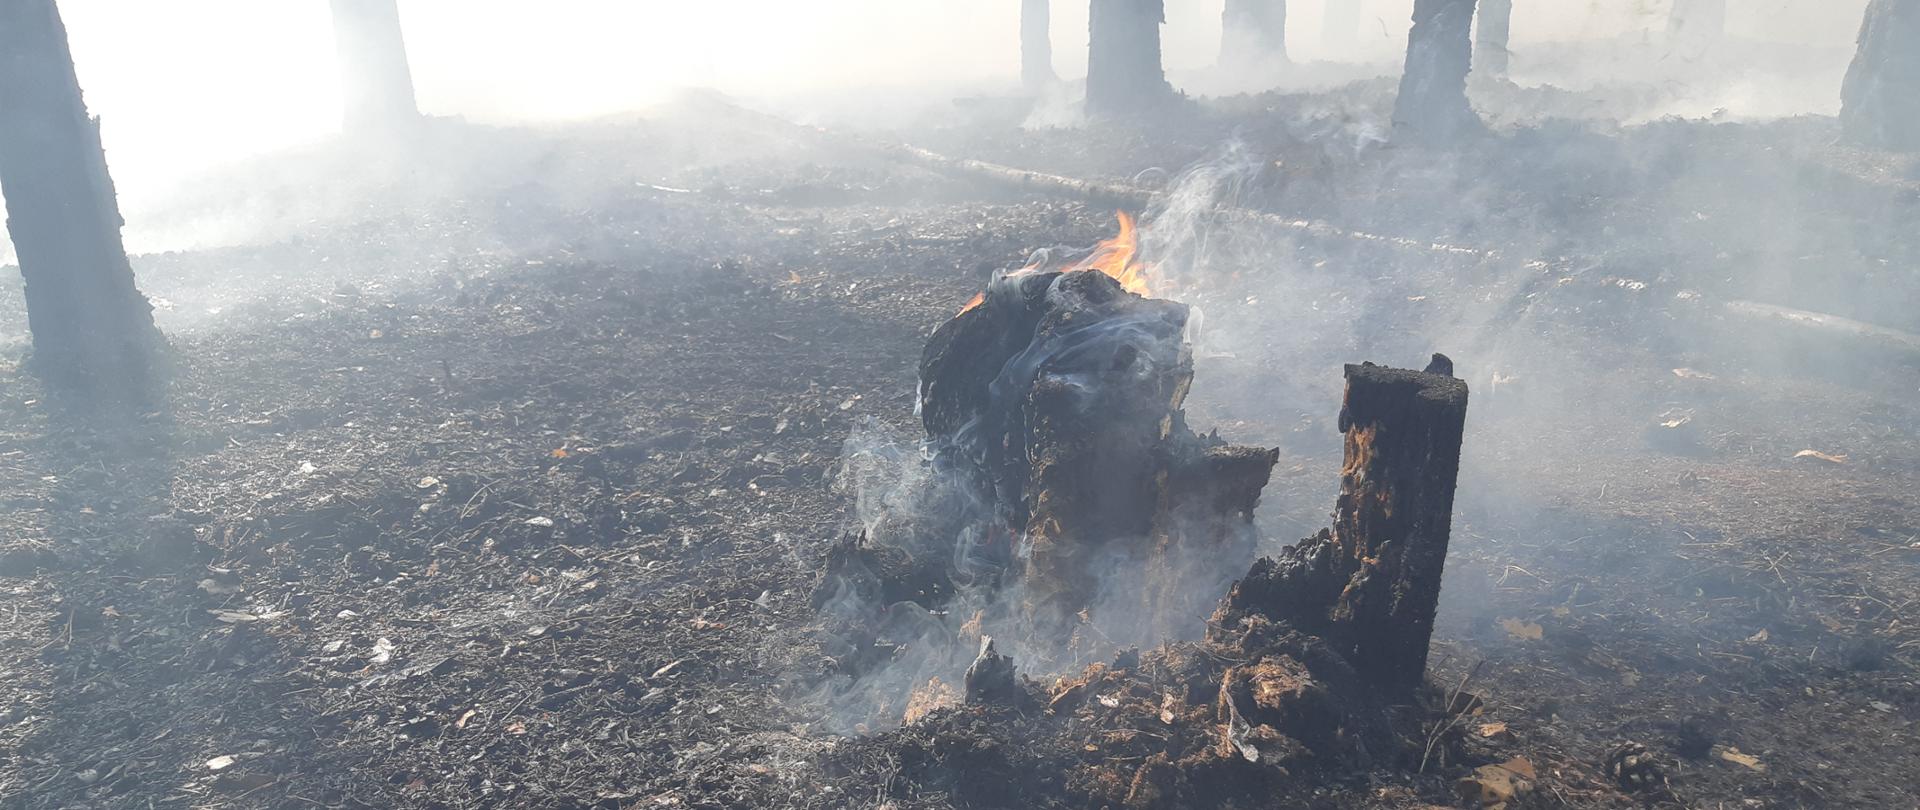 Zdjęcie przedstawia dopalający się pień drzewa podczas pożaru lasu